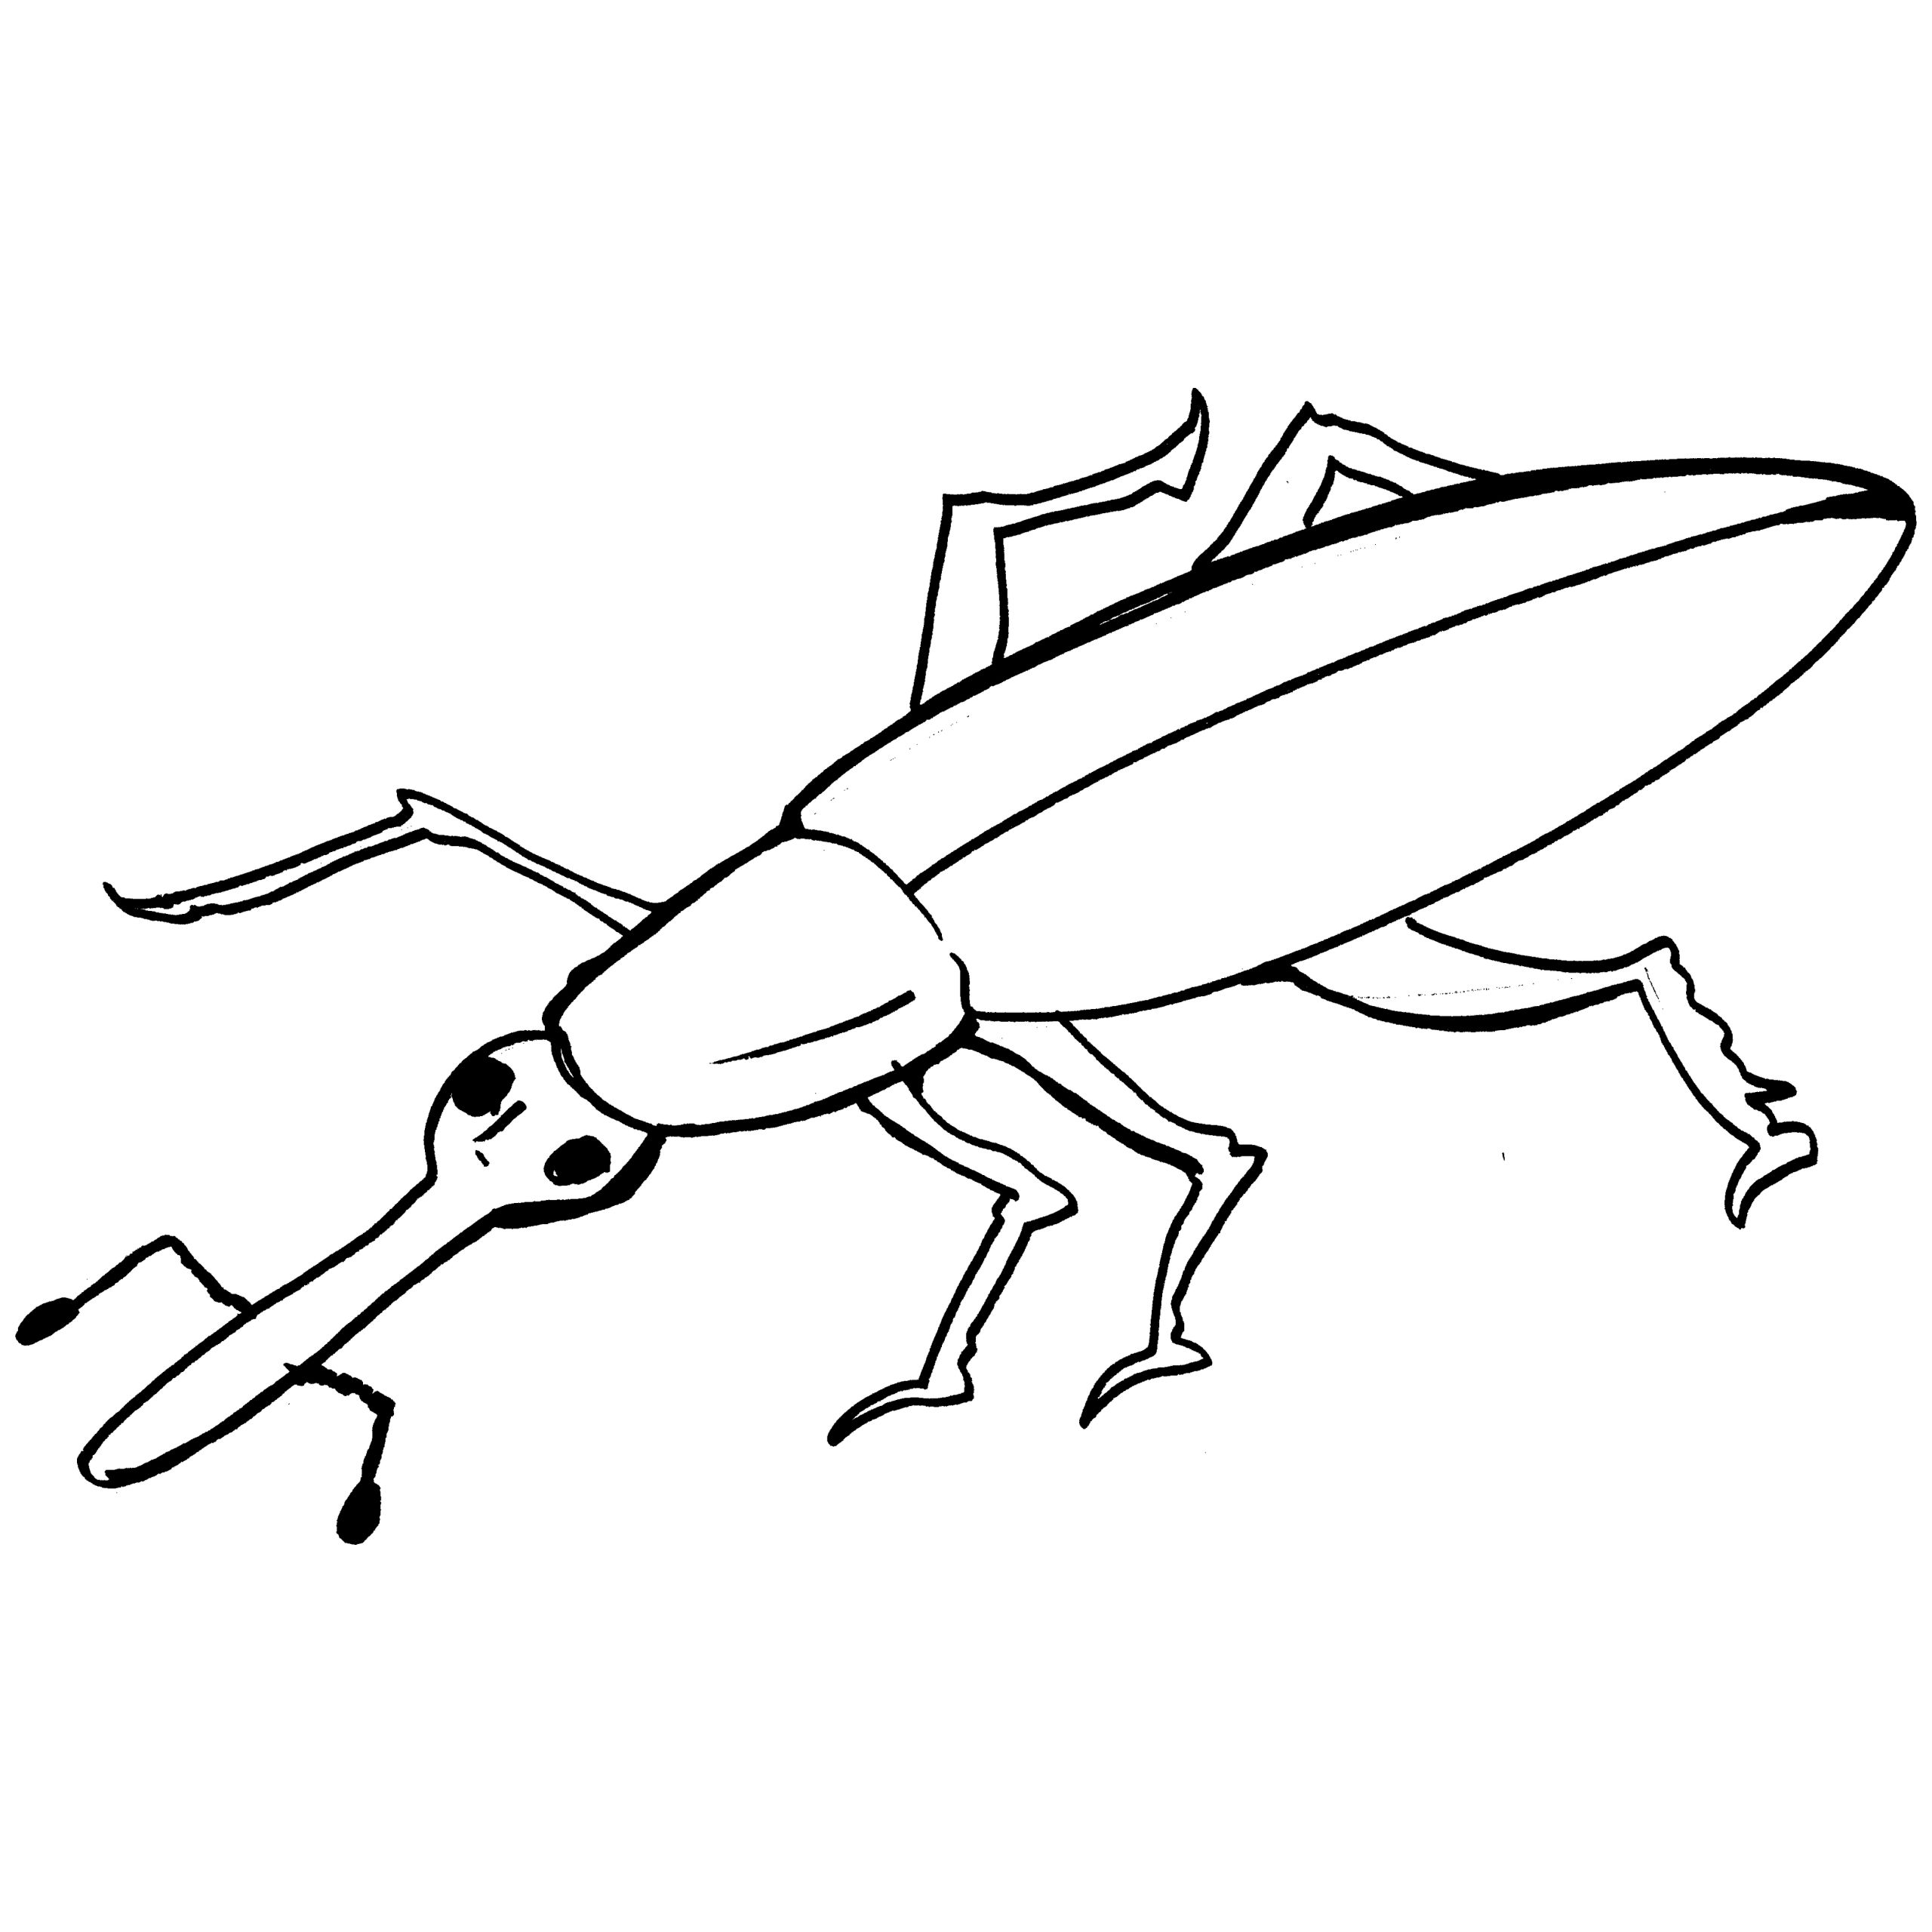 Weevil coloring #10, Download drawings